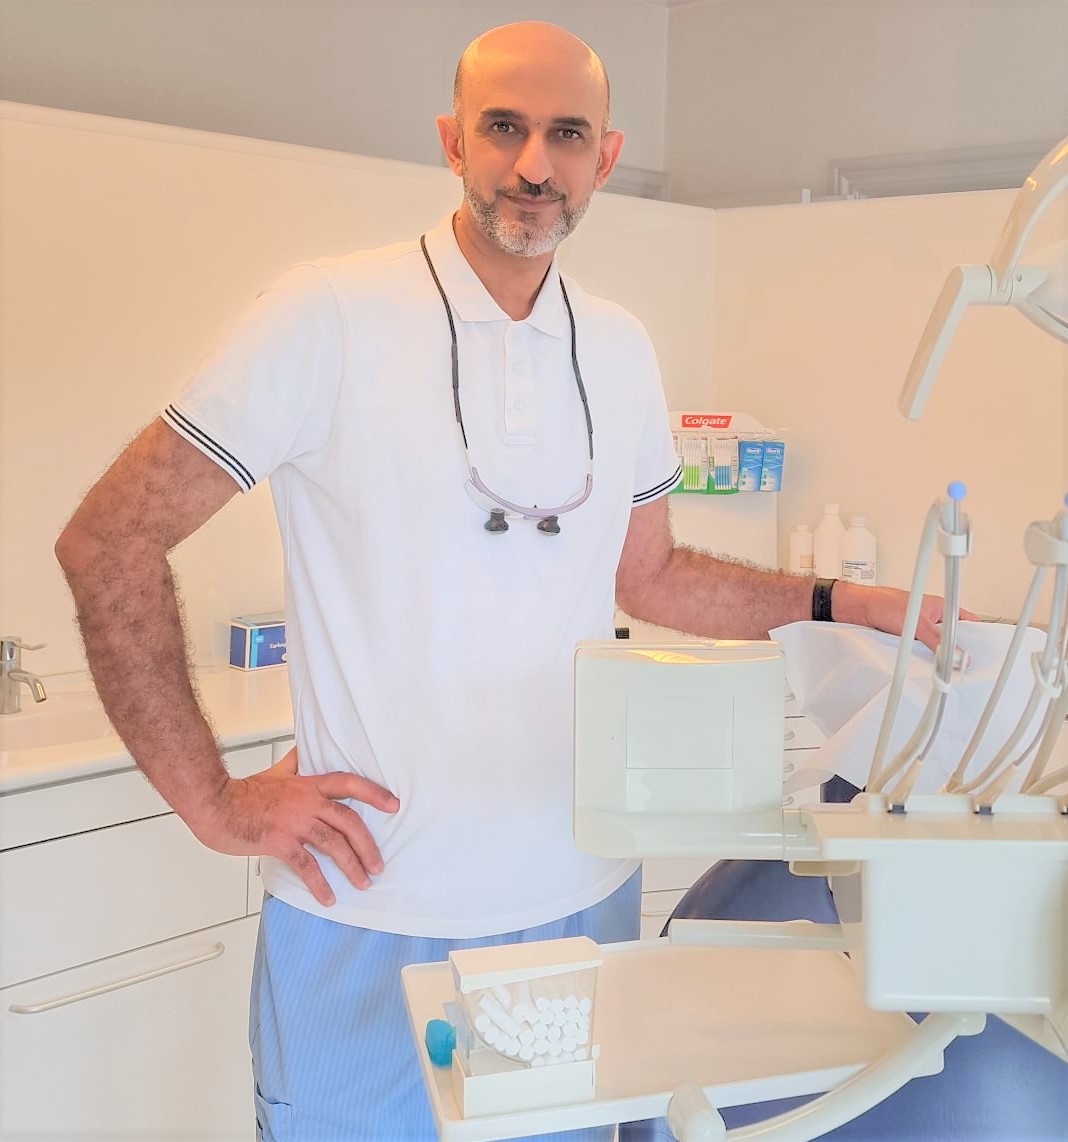 Tandlæger Tandbehandlinger Tandeftersyn tandbehandlinger